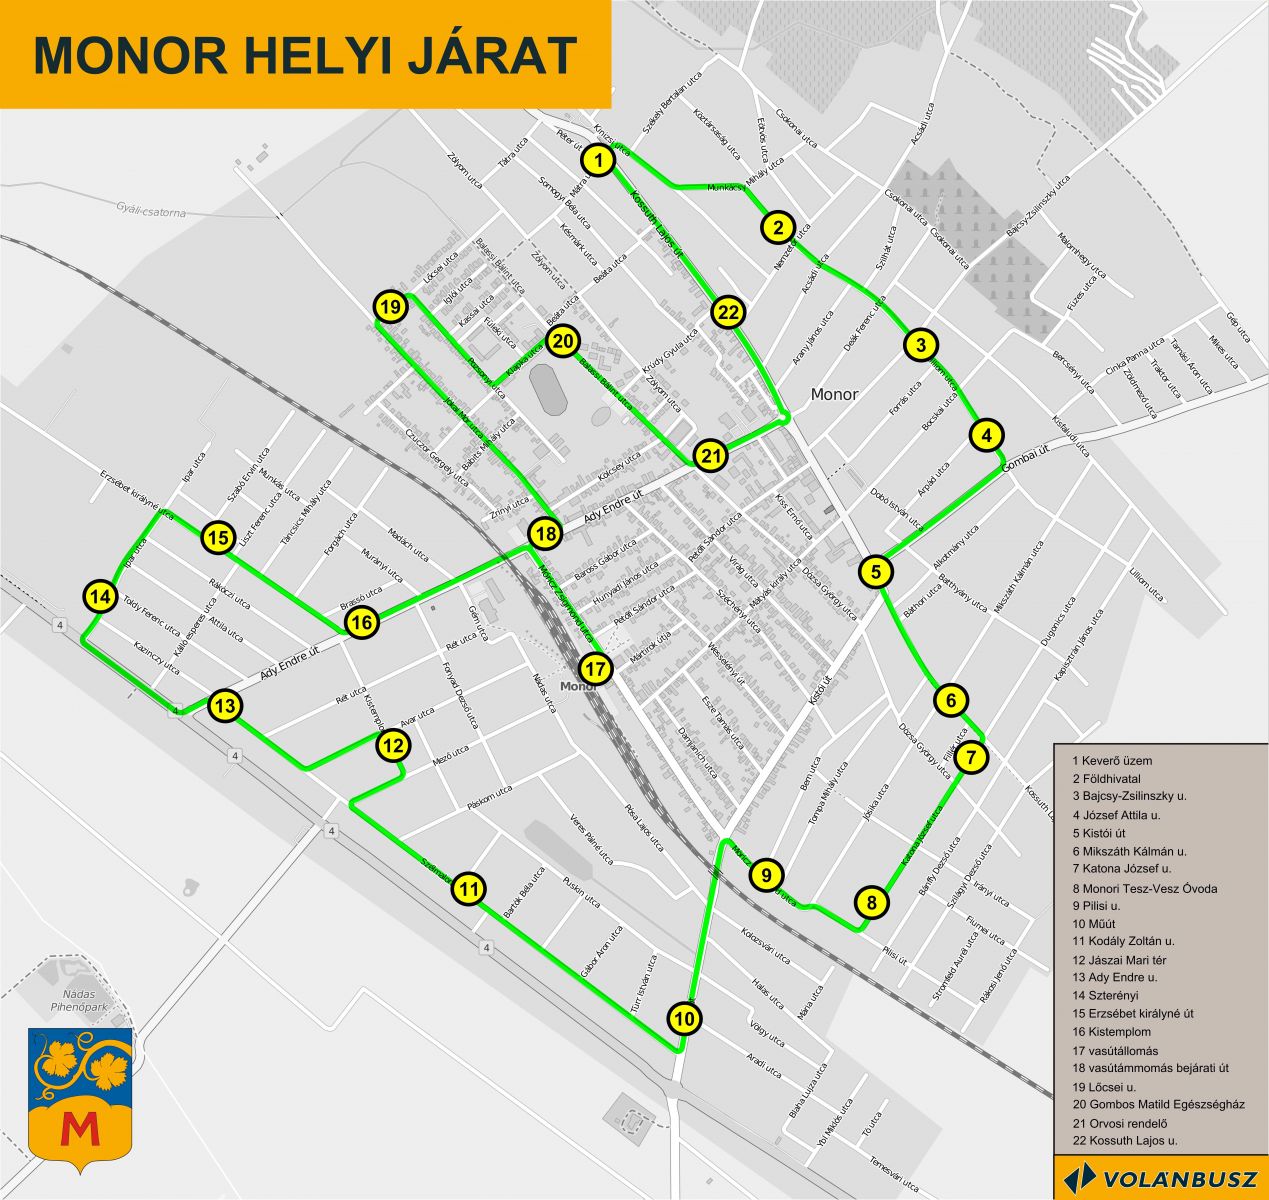 monor térkép Május másodikán újraindult a helyi buszjárat | Monor város  monor térkép